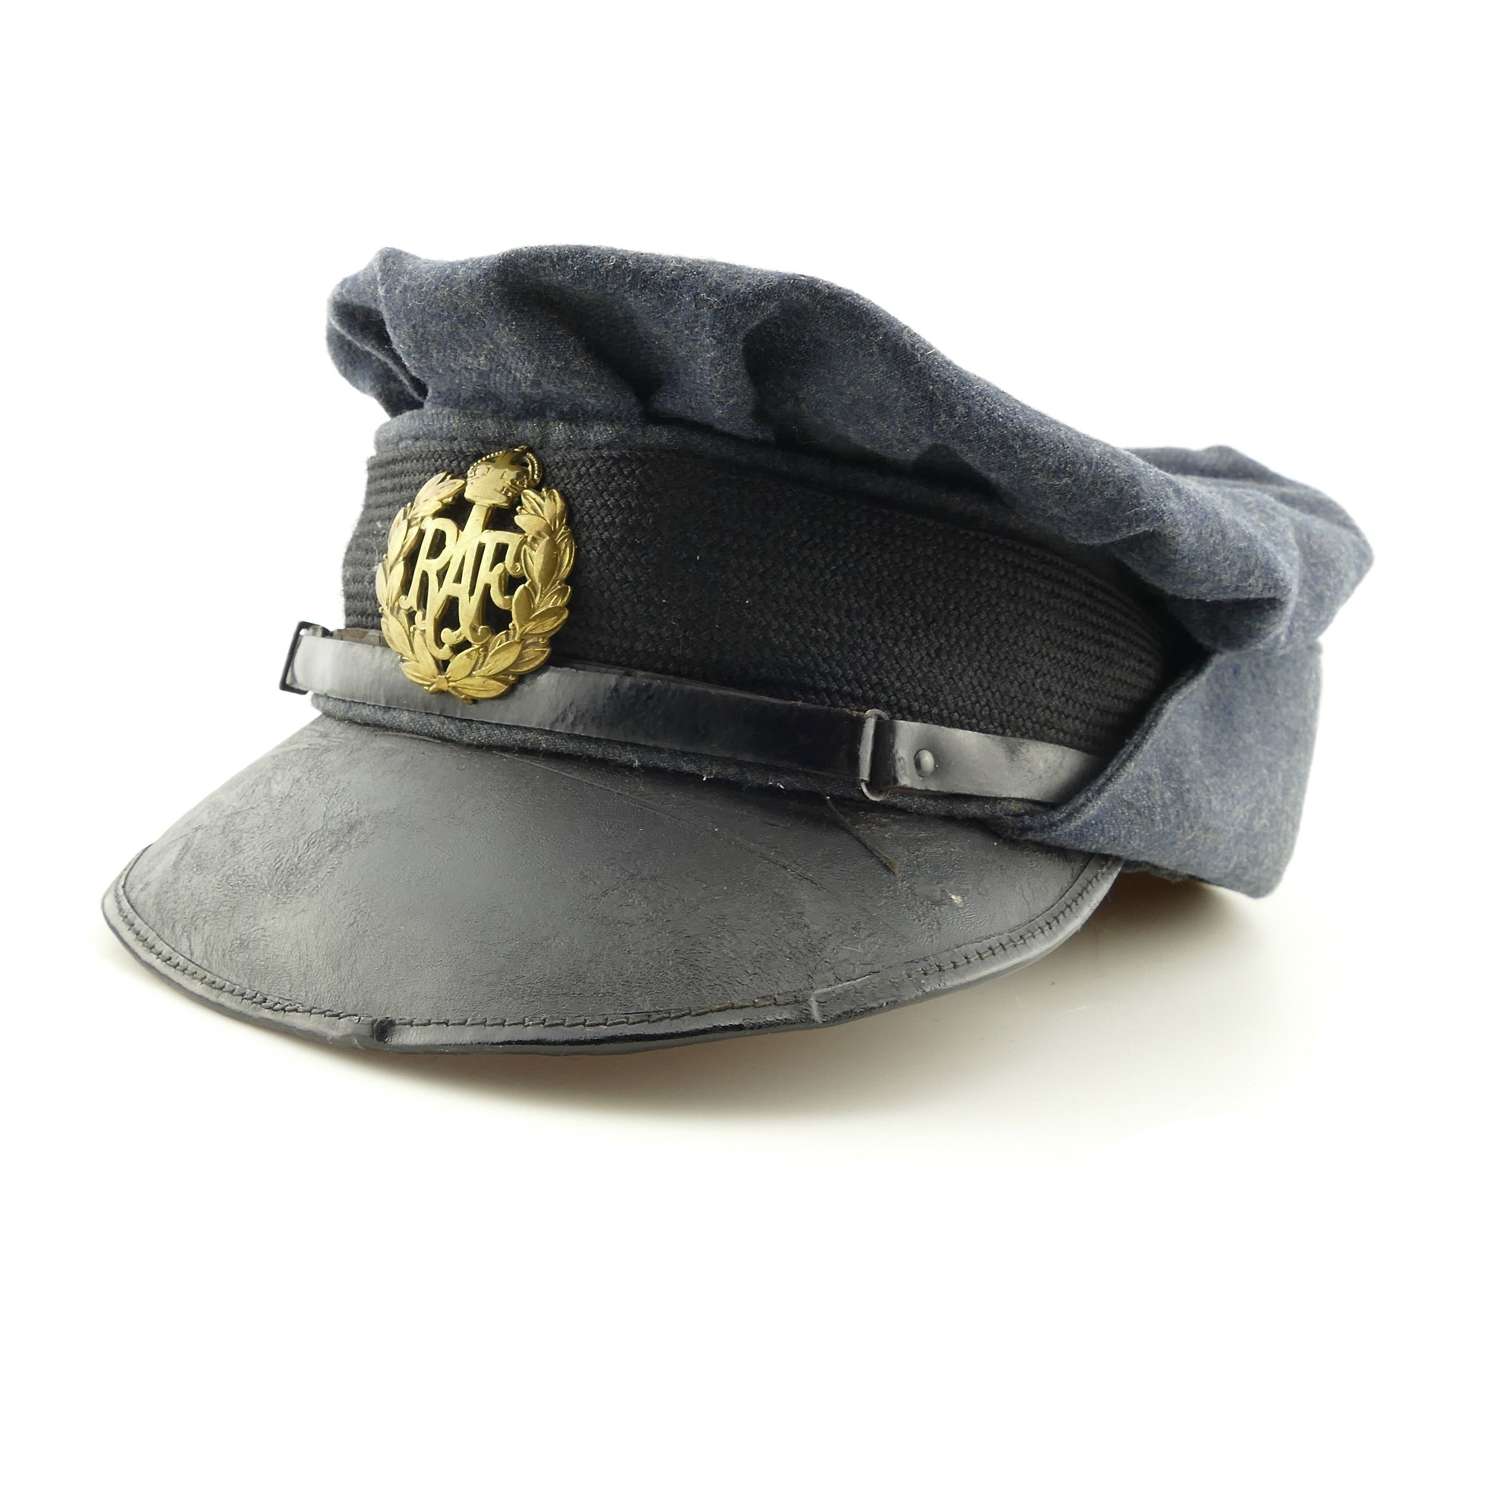 WAAF airwoman's service dress cap